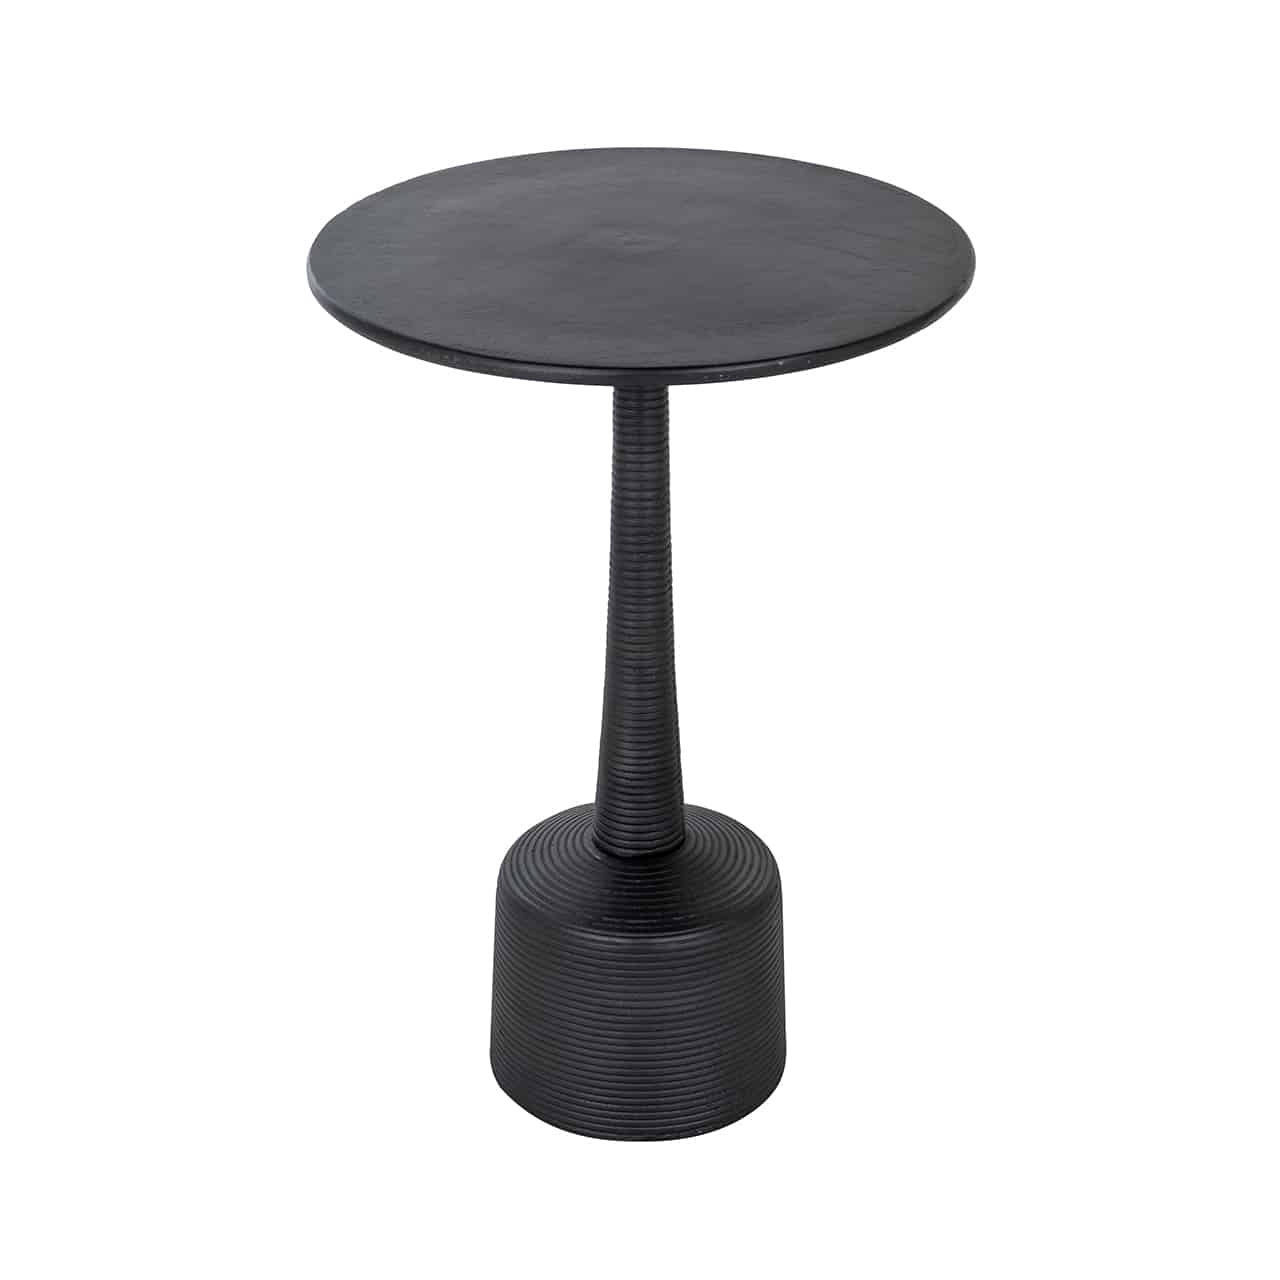 Schwarzer Beistelltisch, bestehend aus einem dicken, runden Sockel auf dem ein dünner, leicht konischer Fuß angebracht ist, darauf eine runde Tischplatte. 